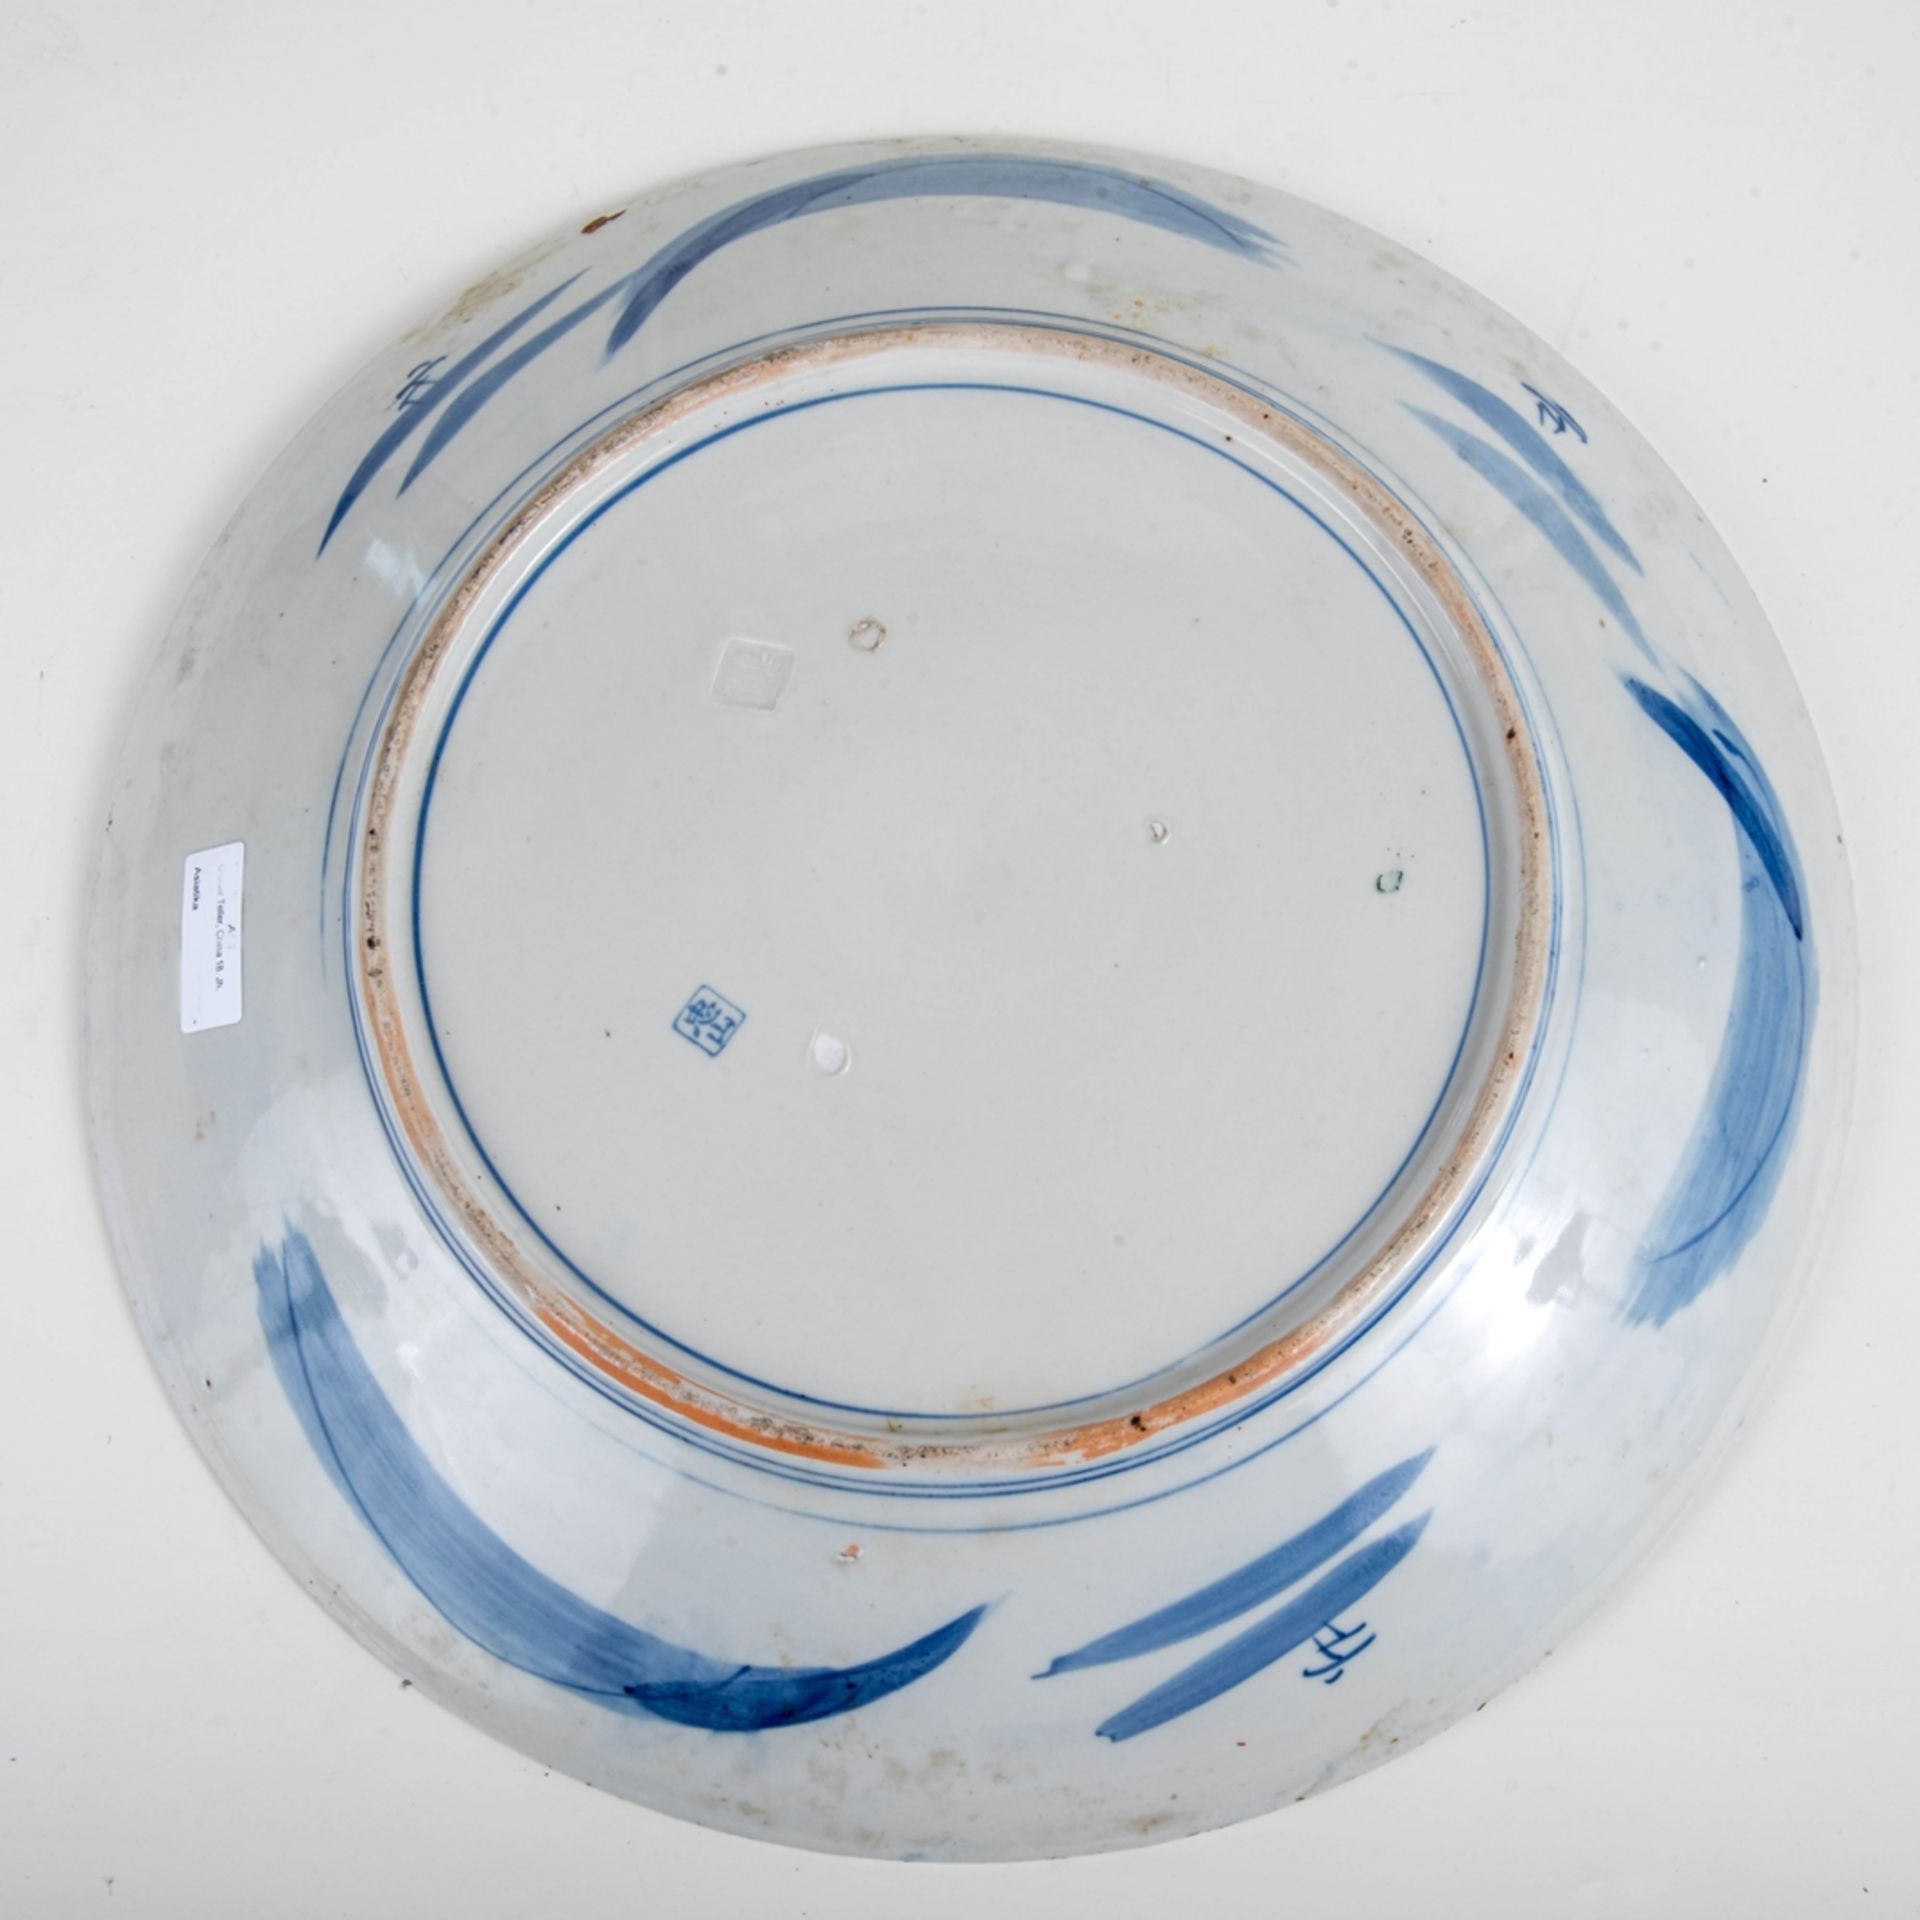 Großer Teller, China 18. Jh.Porzellan blau bemalt. Unterseite mit Pressmarke u. blauer Marke. - Image 2 of 2